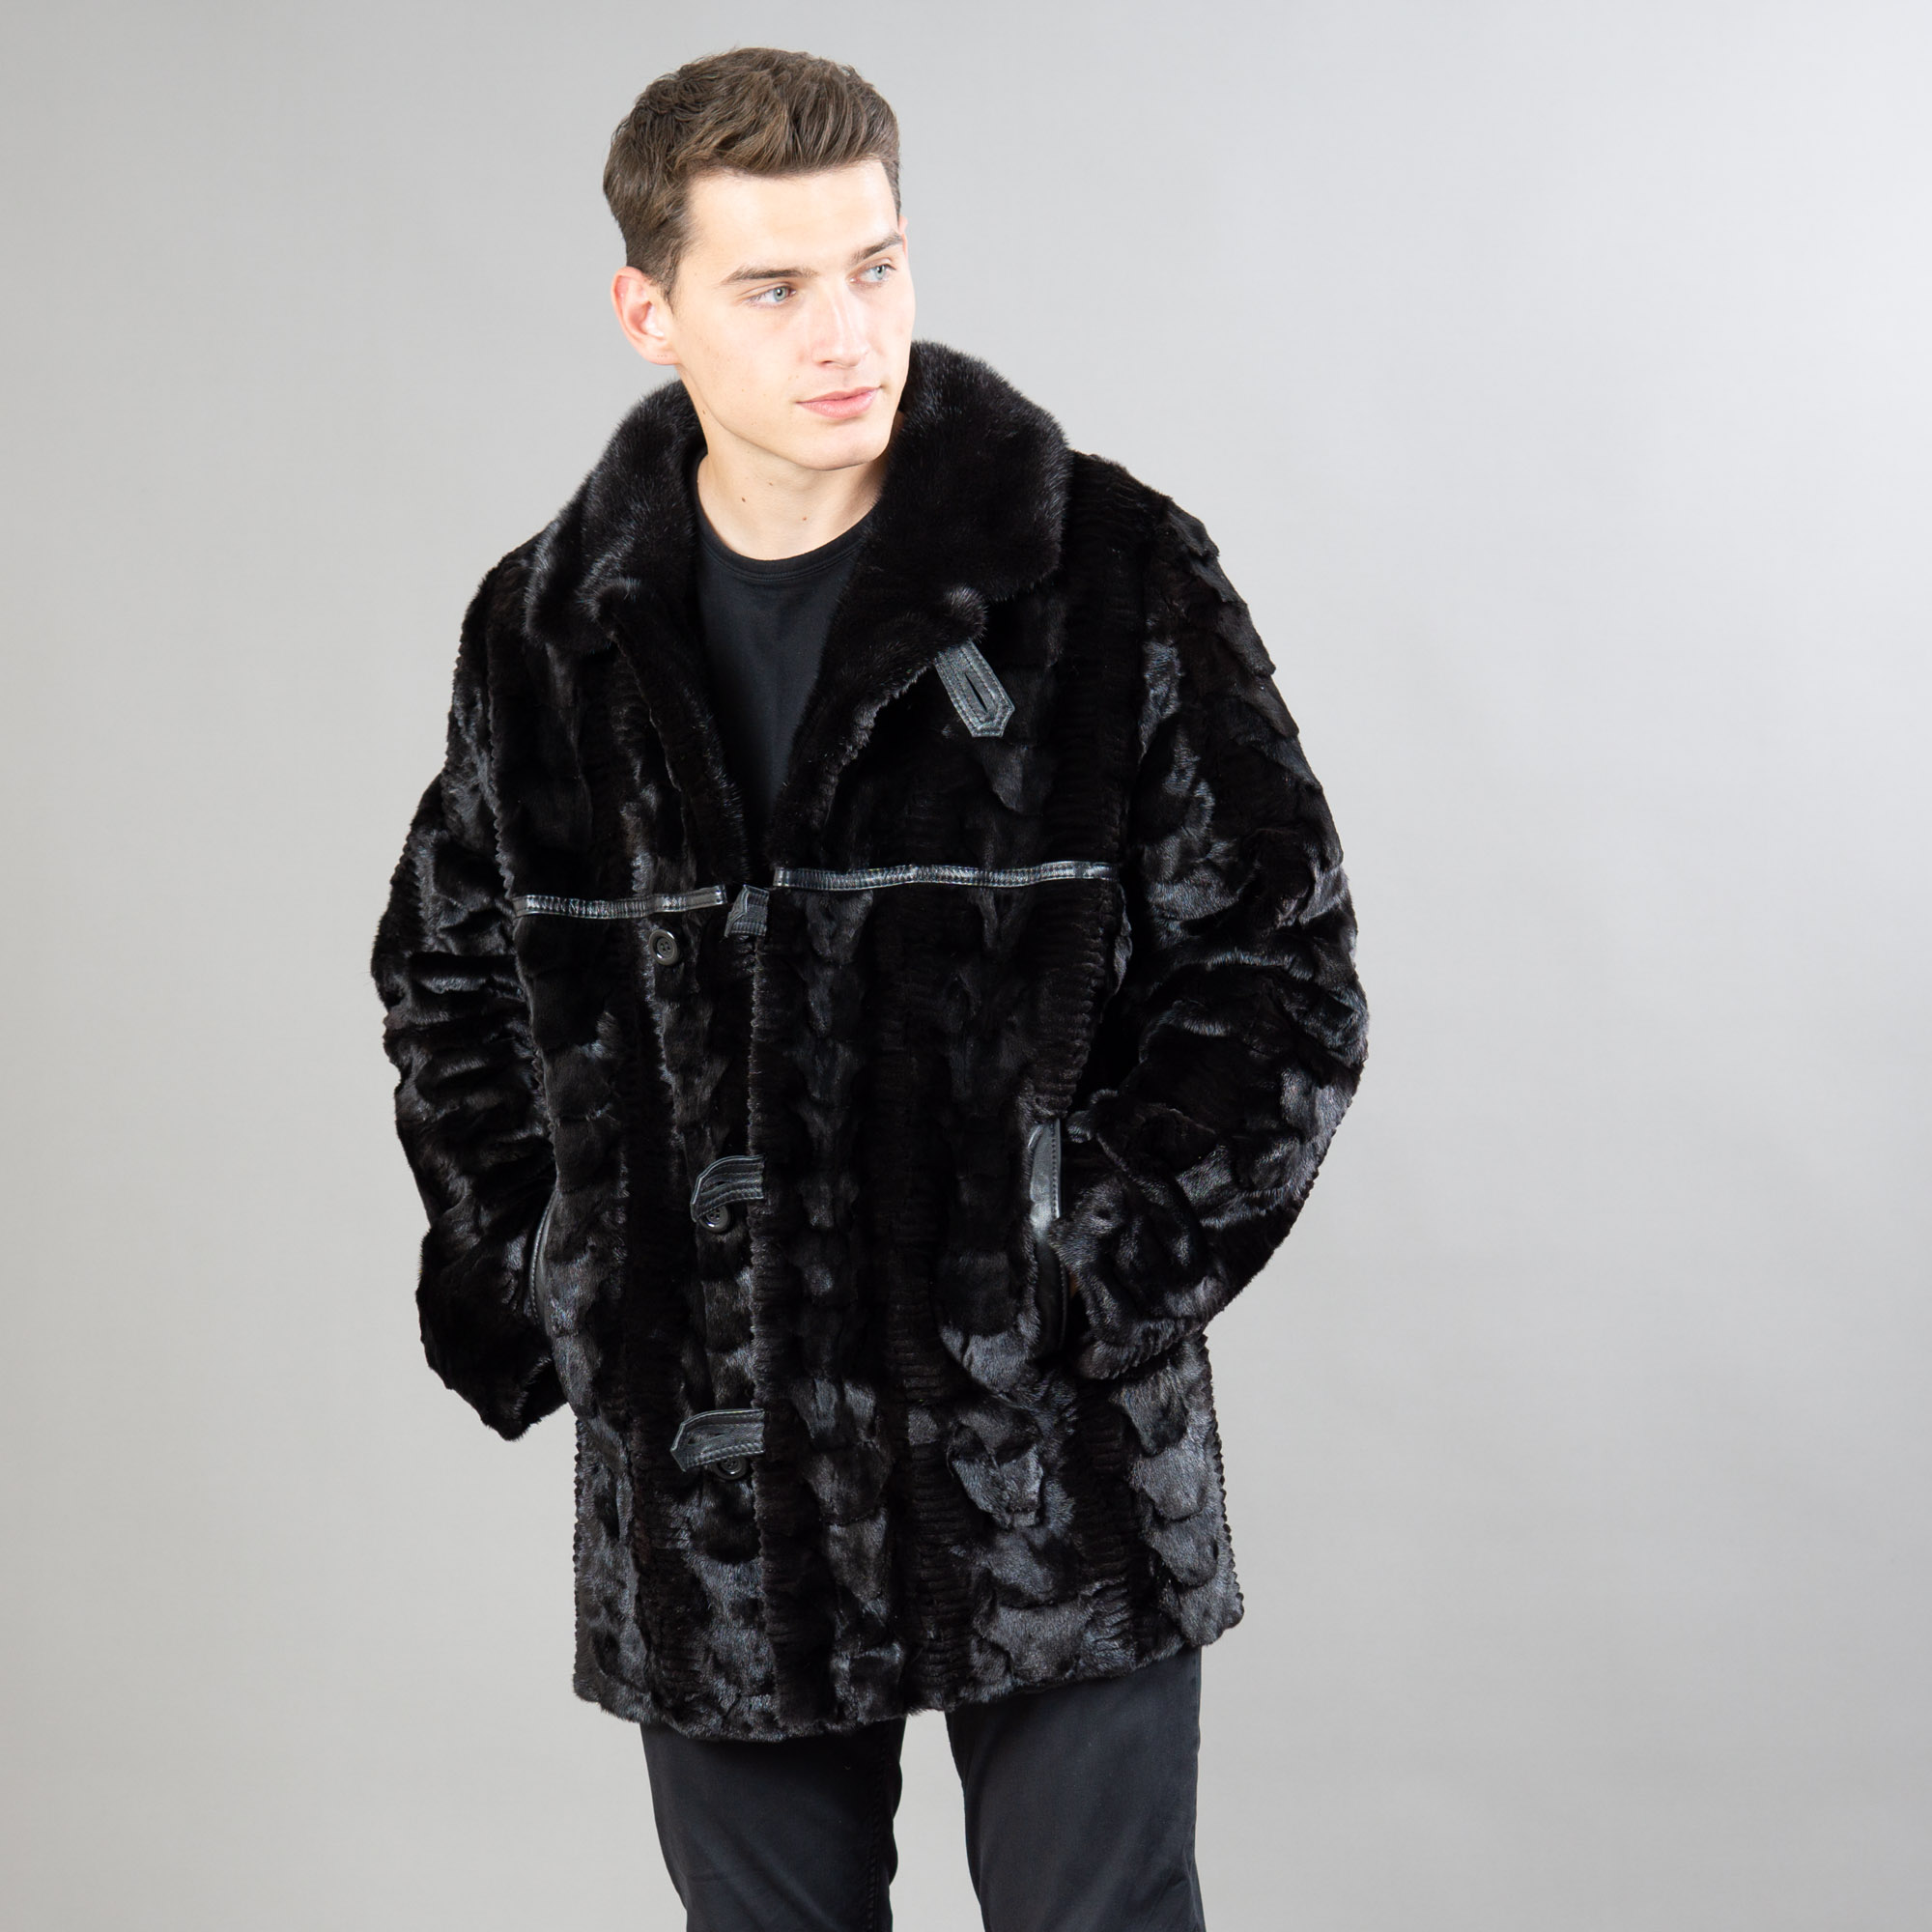 Mink fur jacket with leather details in black color